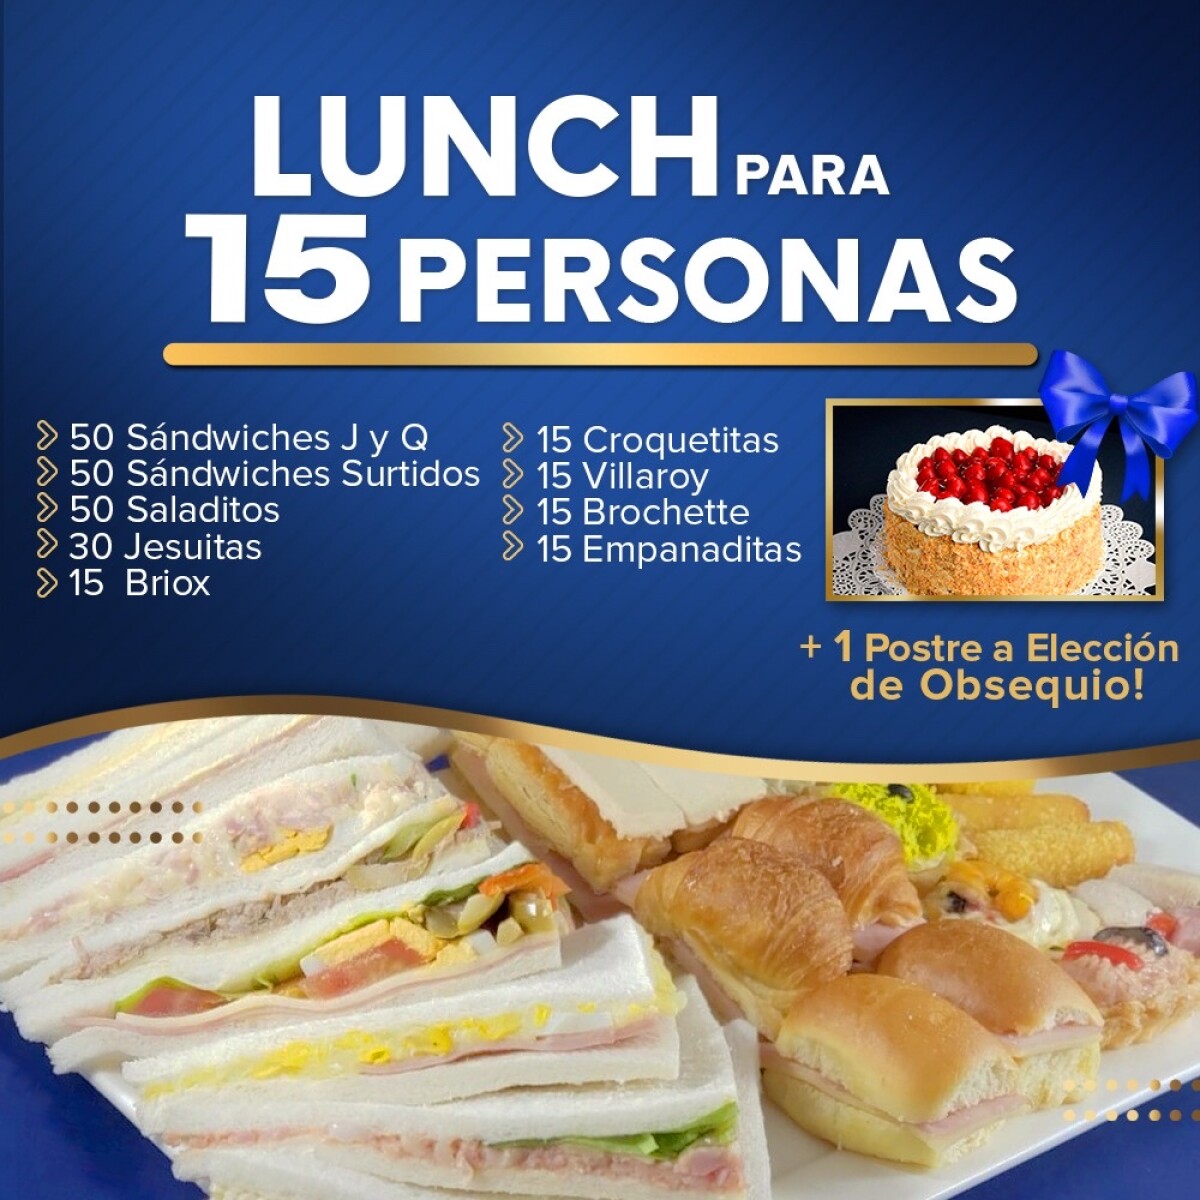 Lunch para 15 personas 